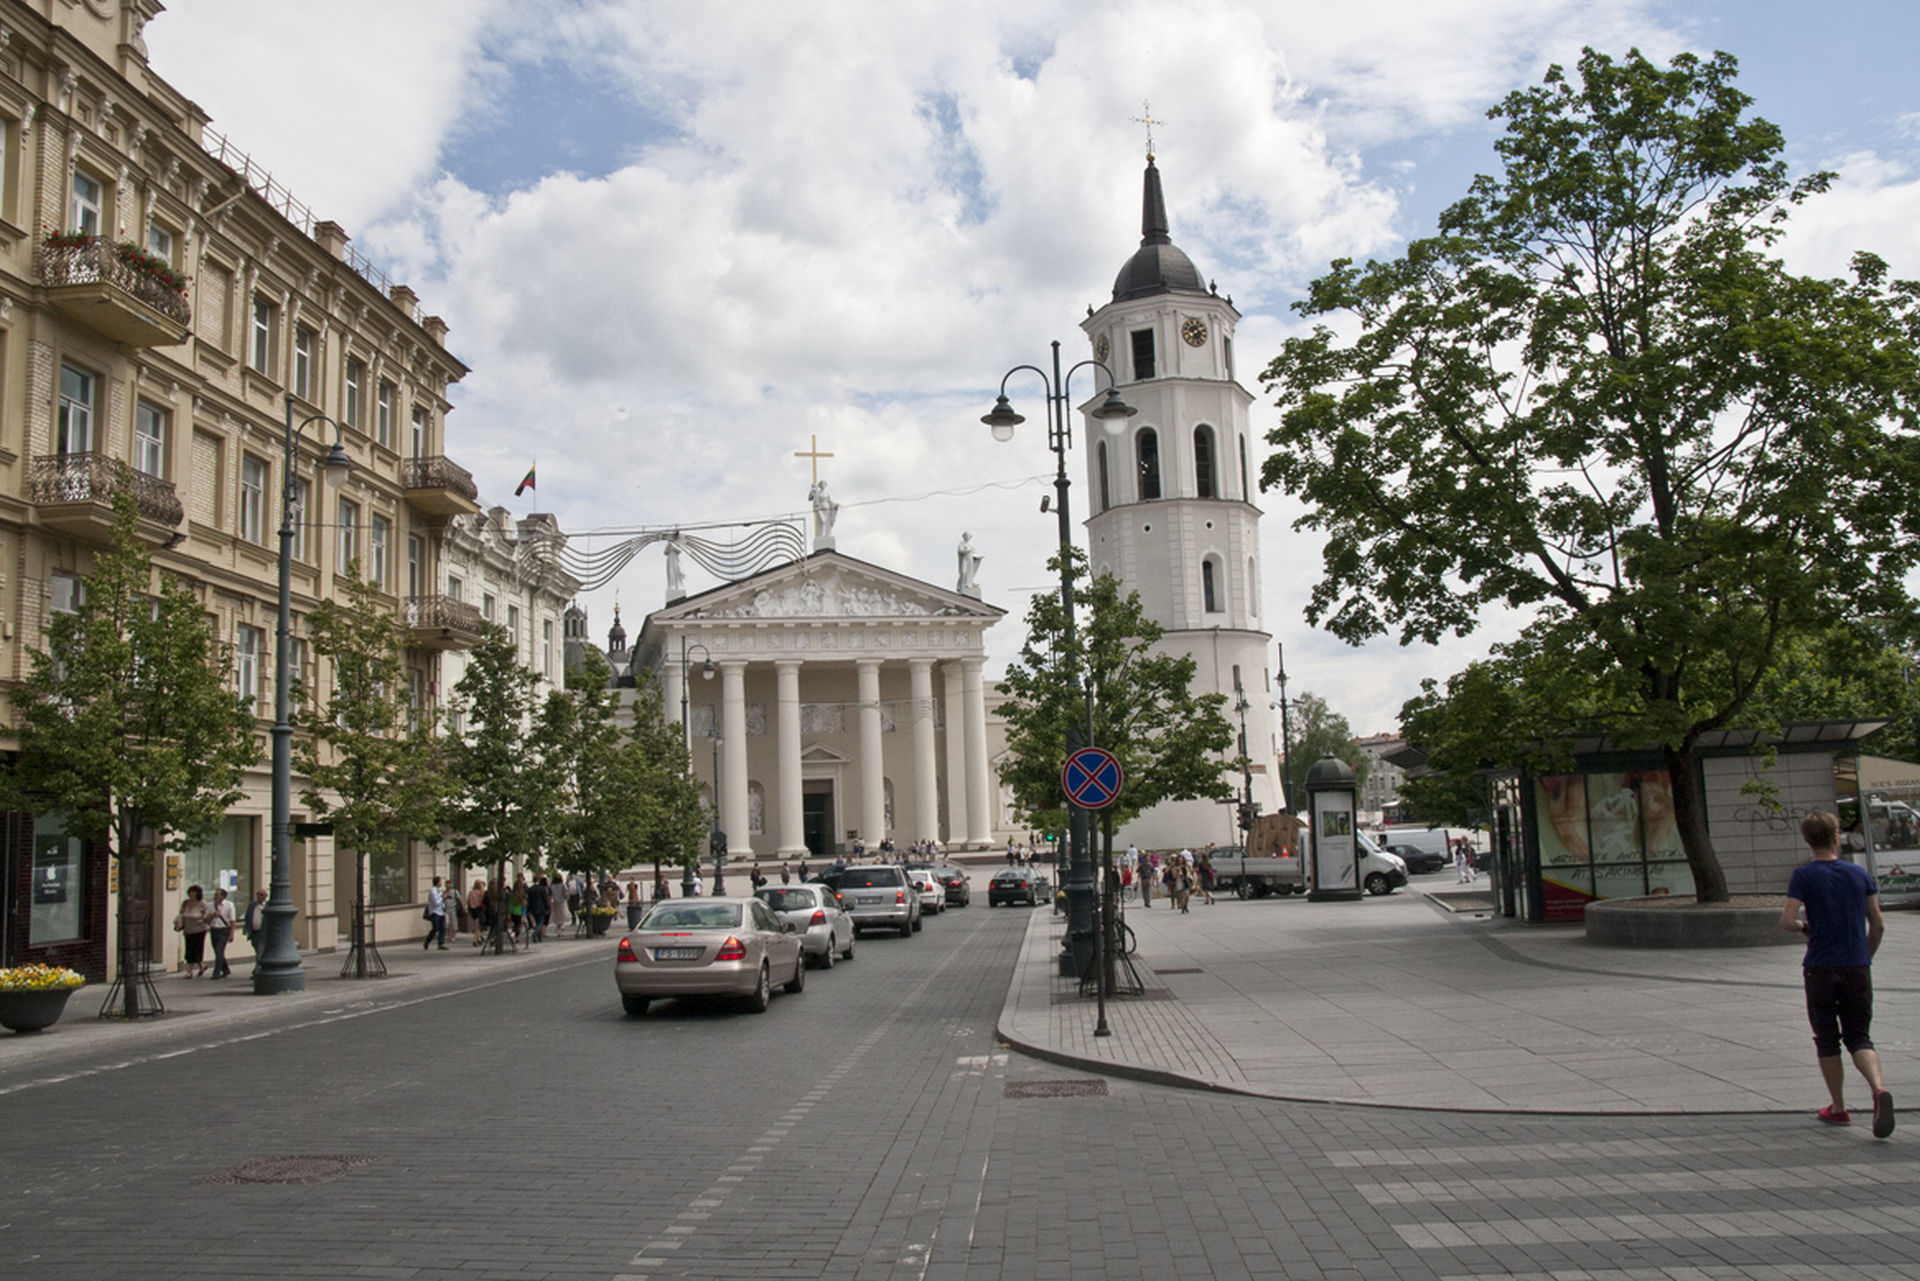 Widok na Katedrę Wileńską (kościół pw. św. Stanisława i św. Władysława)